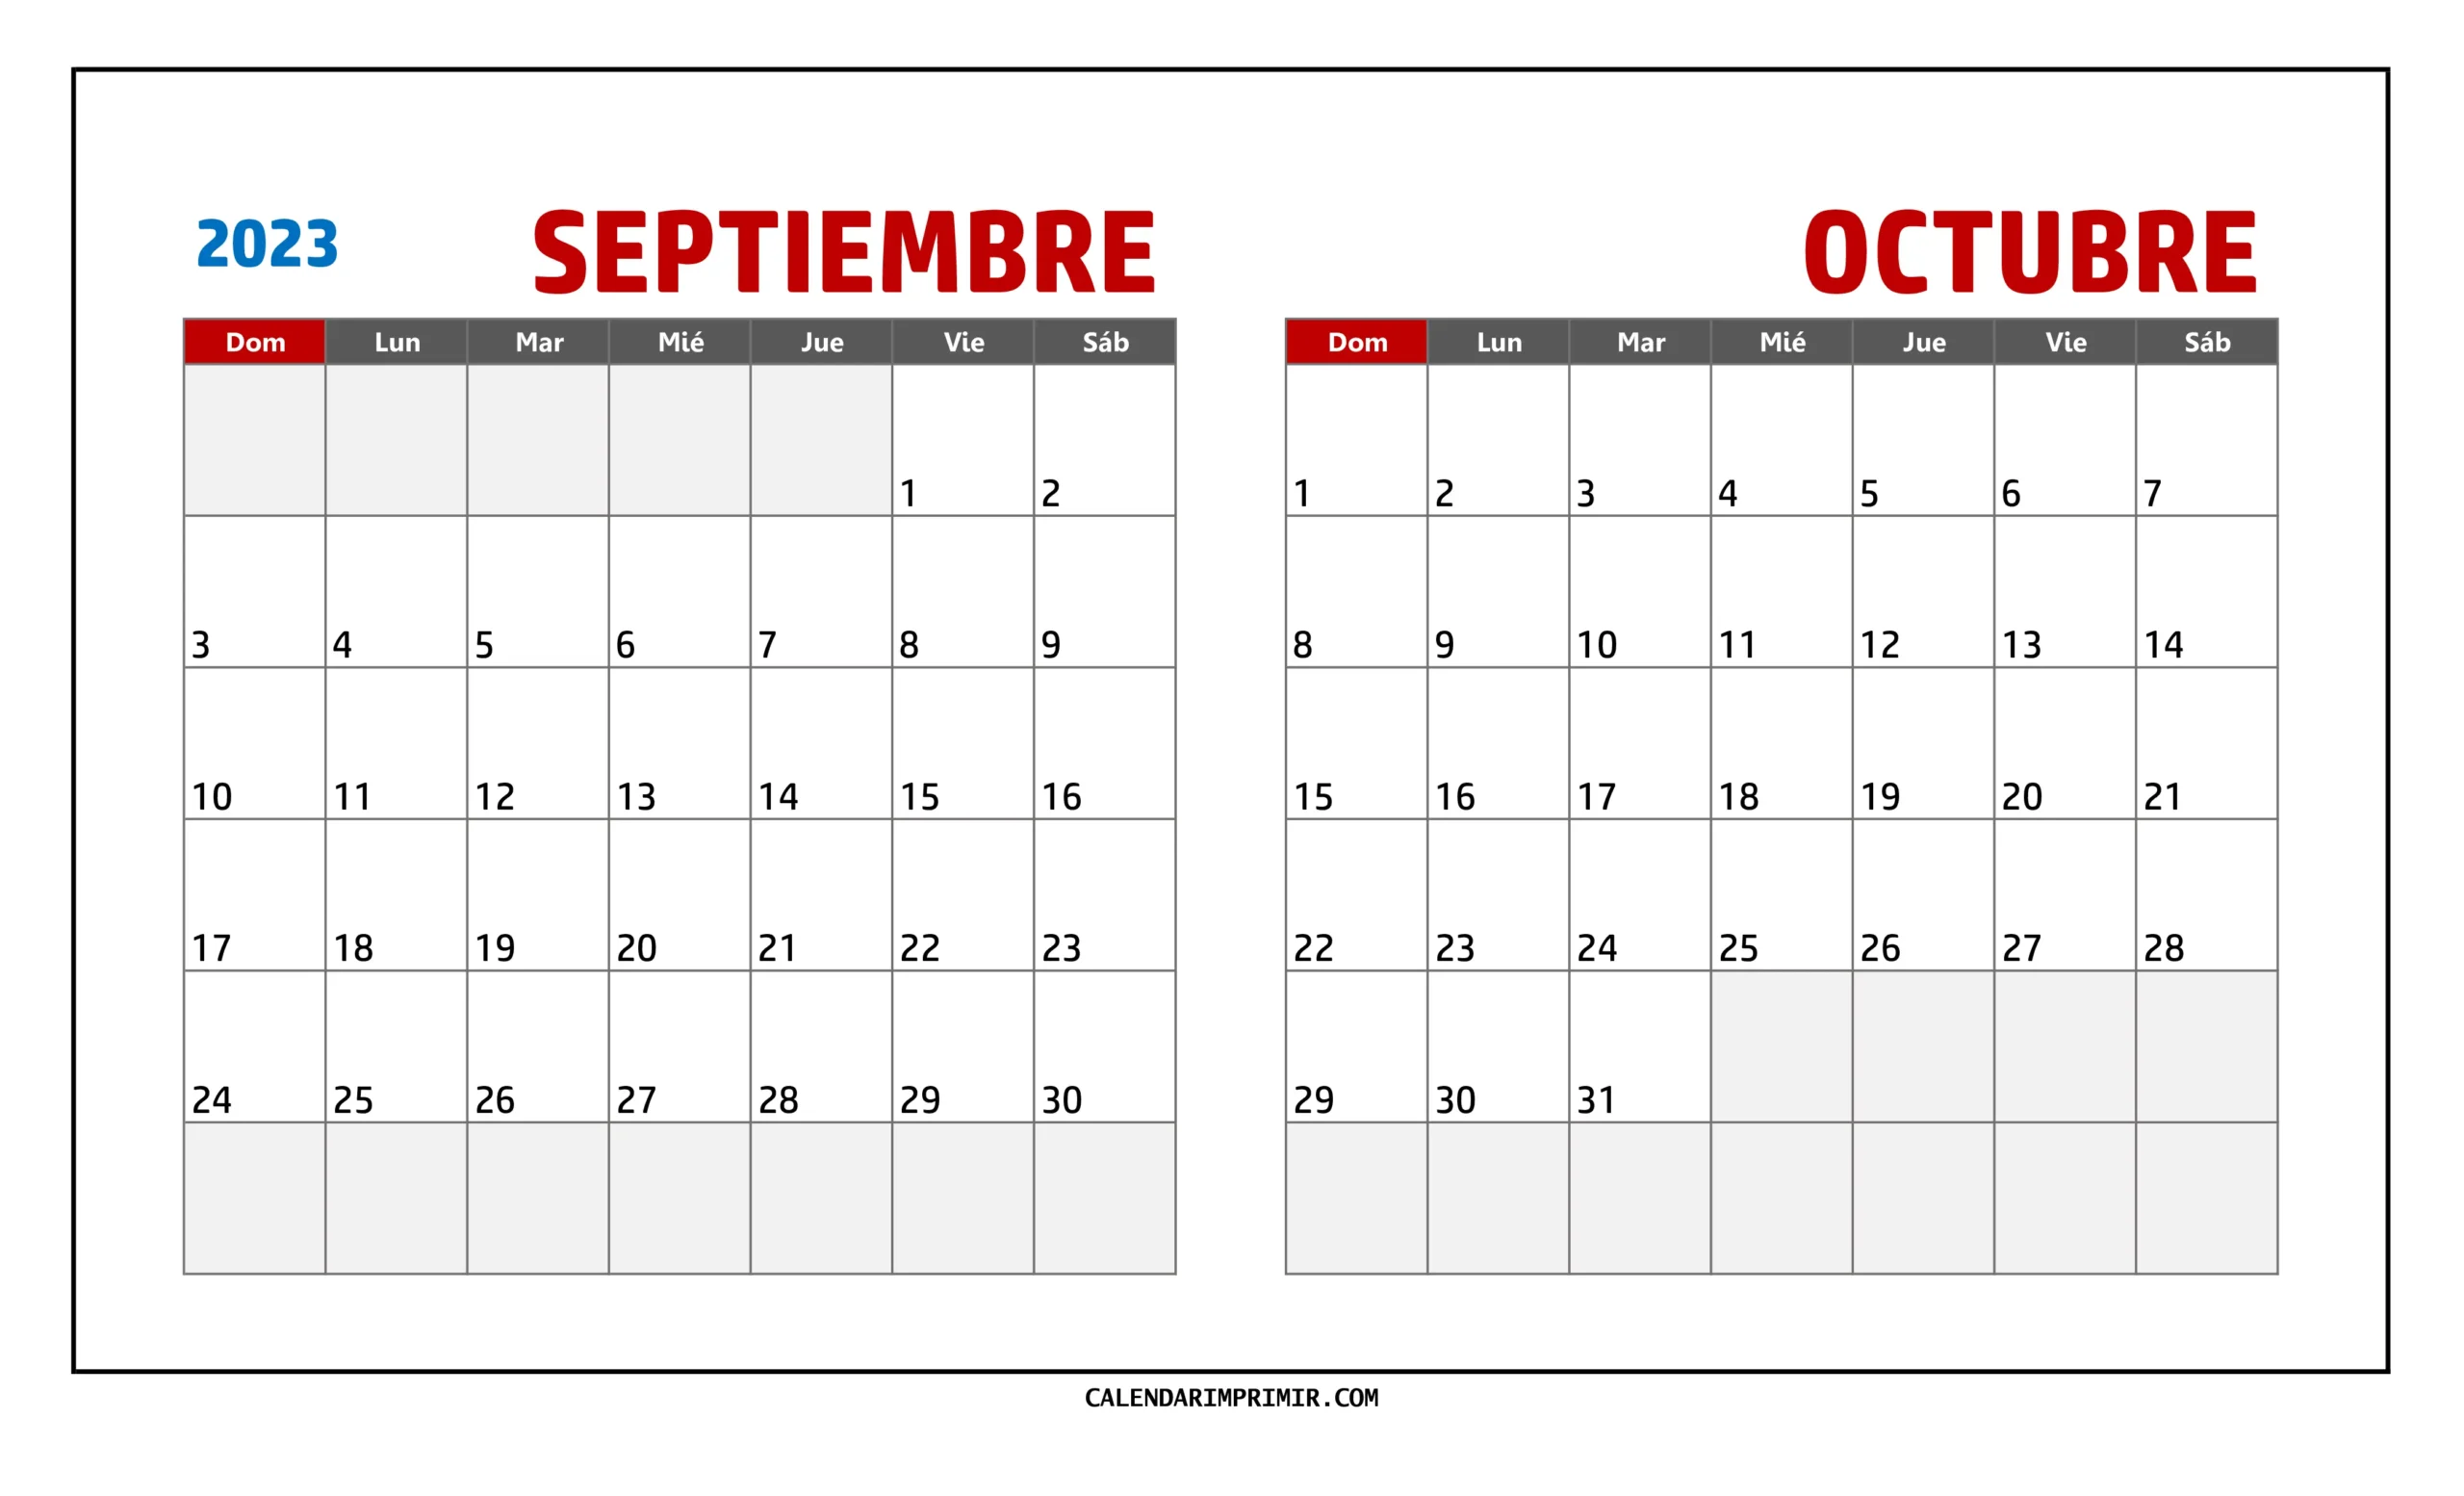 Calendario Septiembre y Octubre 2023 Para Imprimir en formato paisajístico en una sola hoja